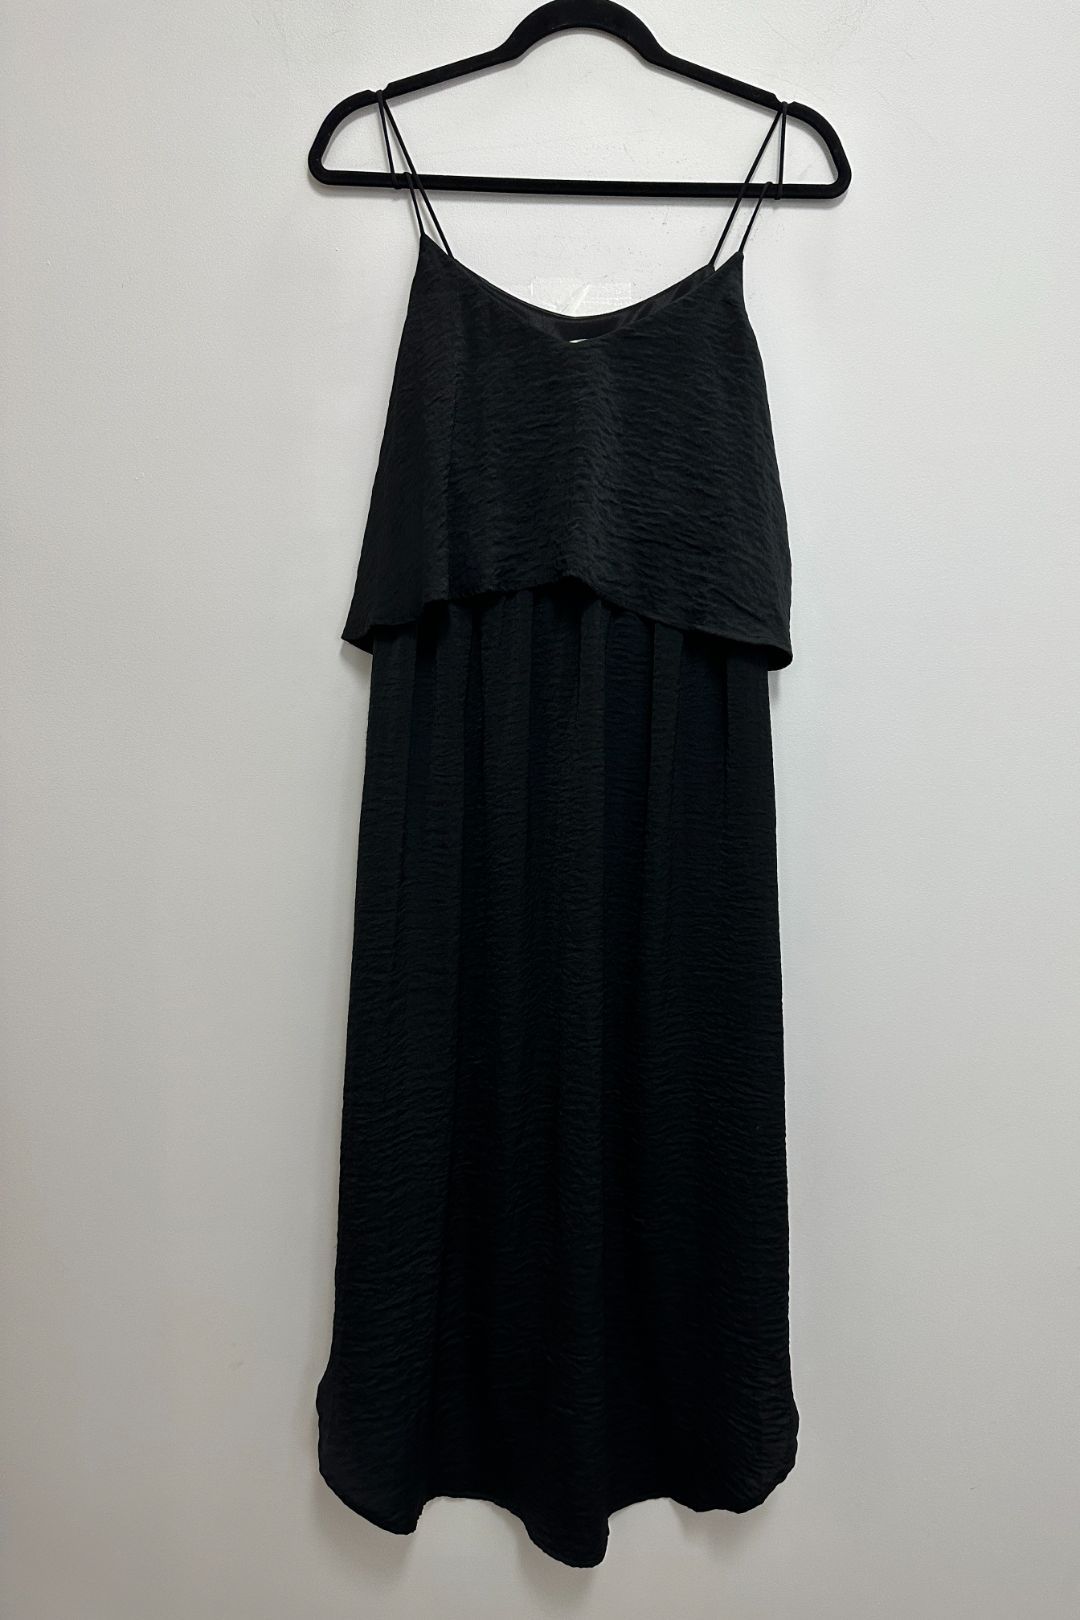 Ripe Maternity - Nursing Midi Slip Dress in Black